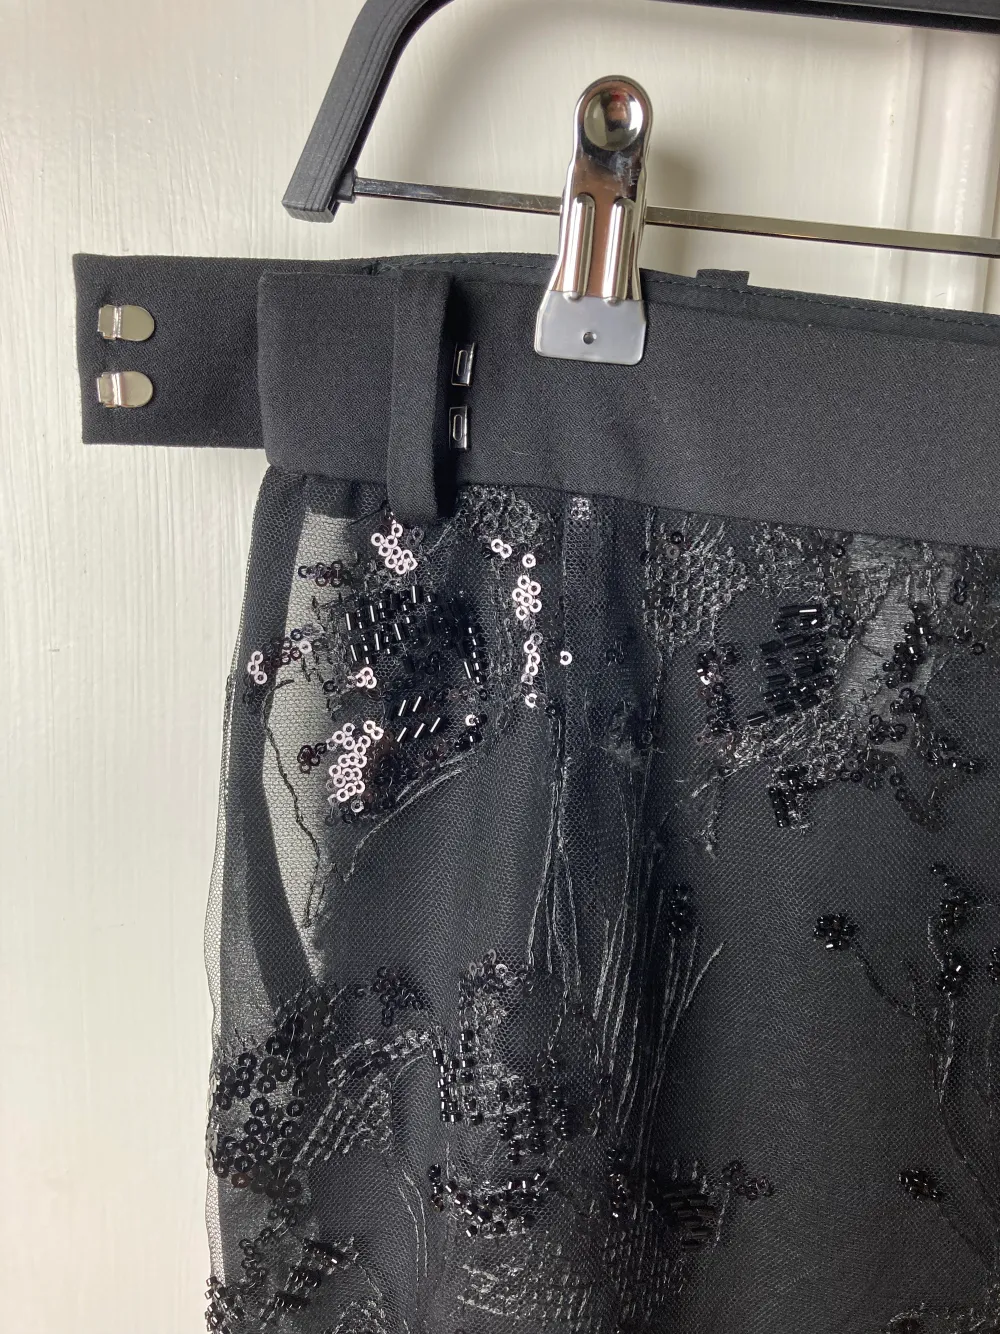 Zara black skirt with glass beads and sequins . Kjolar.